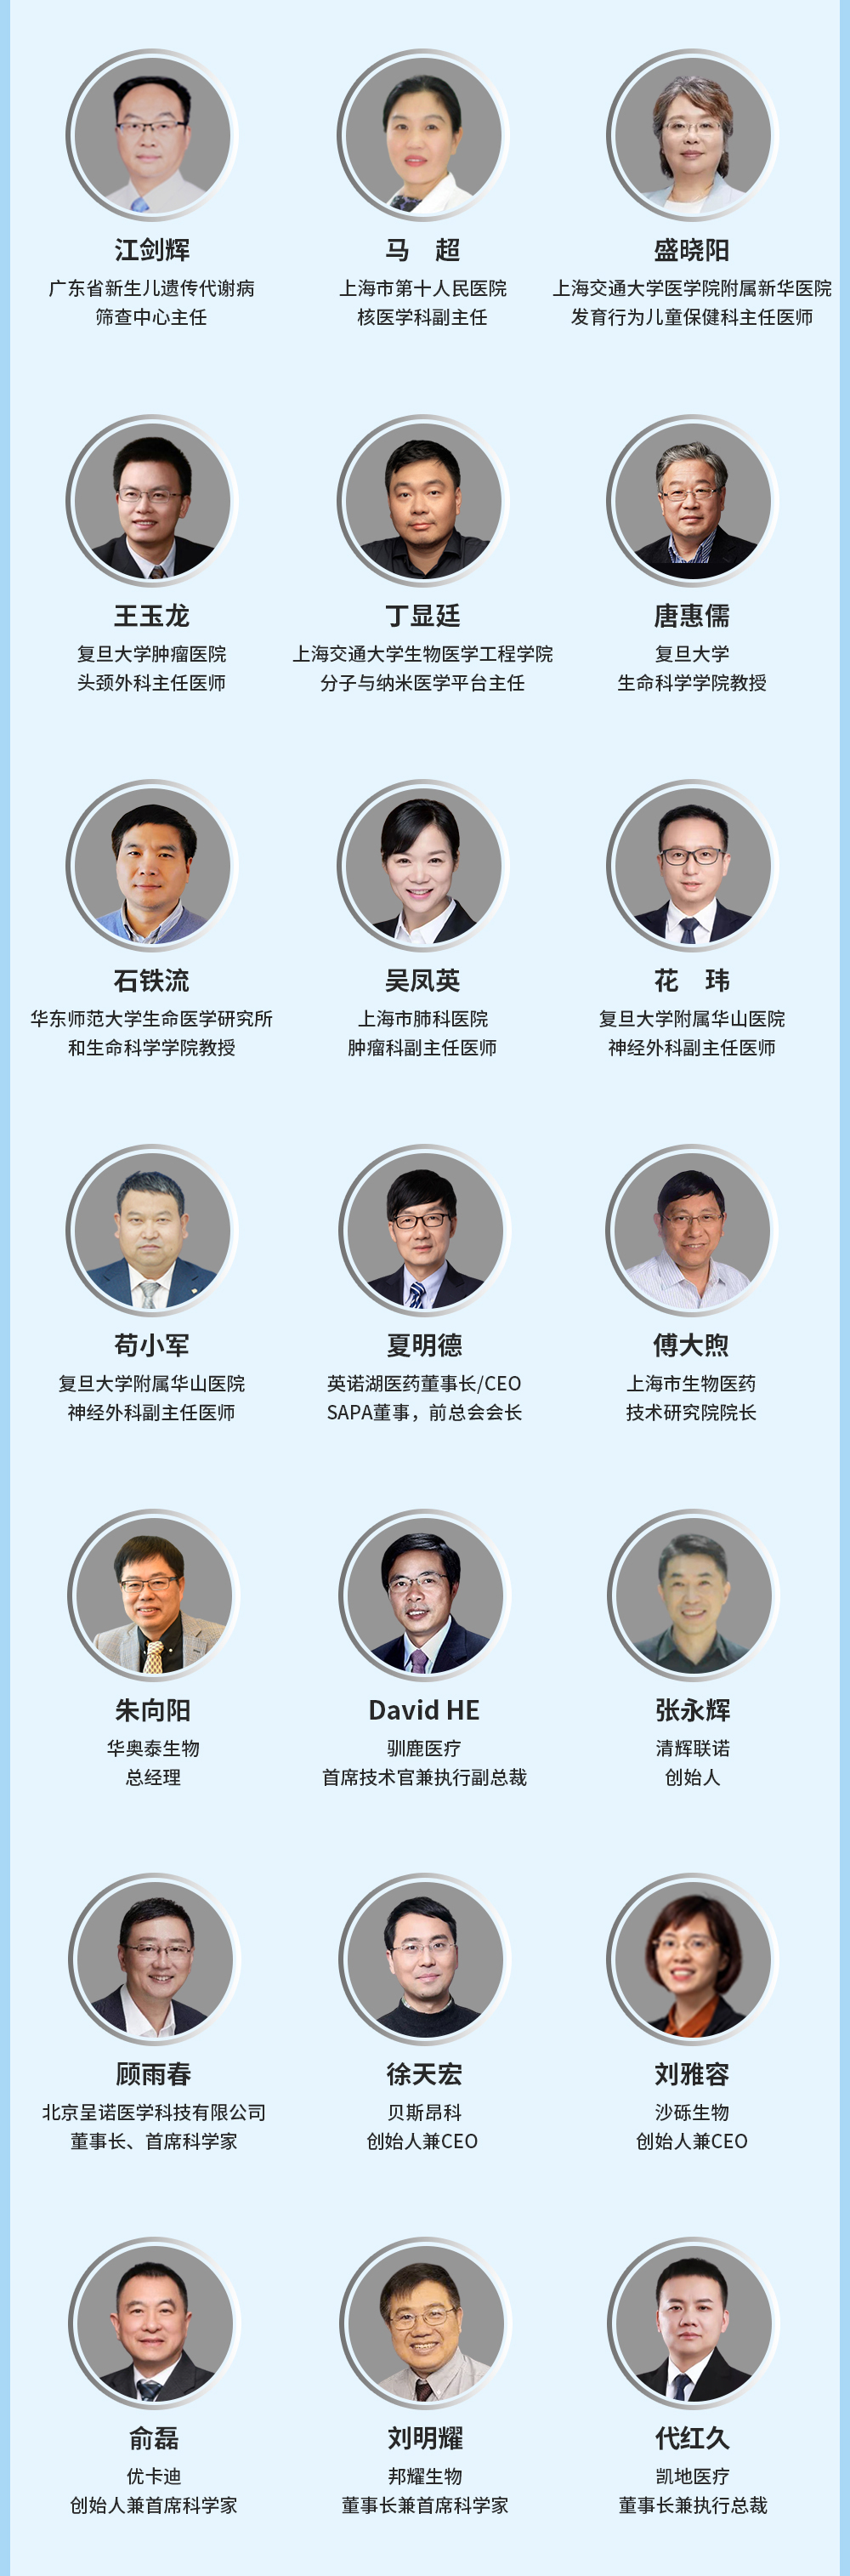 第八屆全球精準醫療（中國）峰會暨第四屆腫瘤免疫治療領袖峰會-上海站